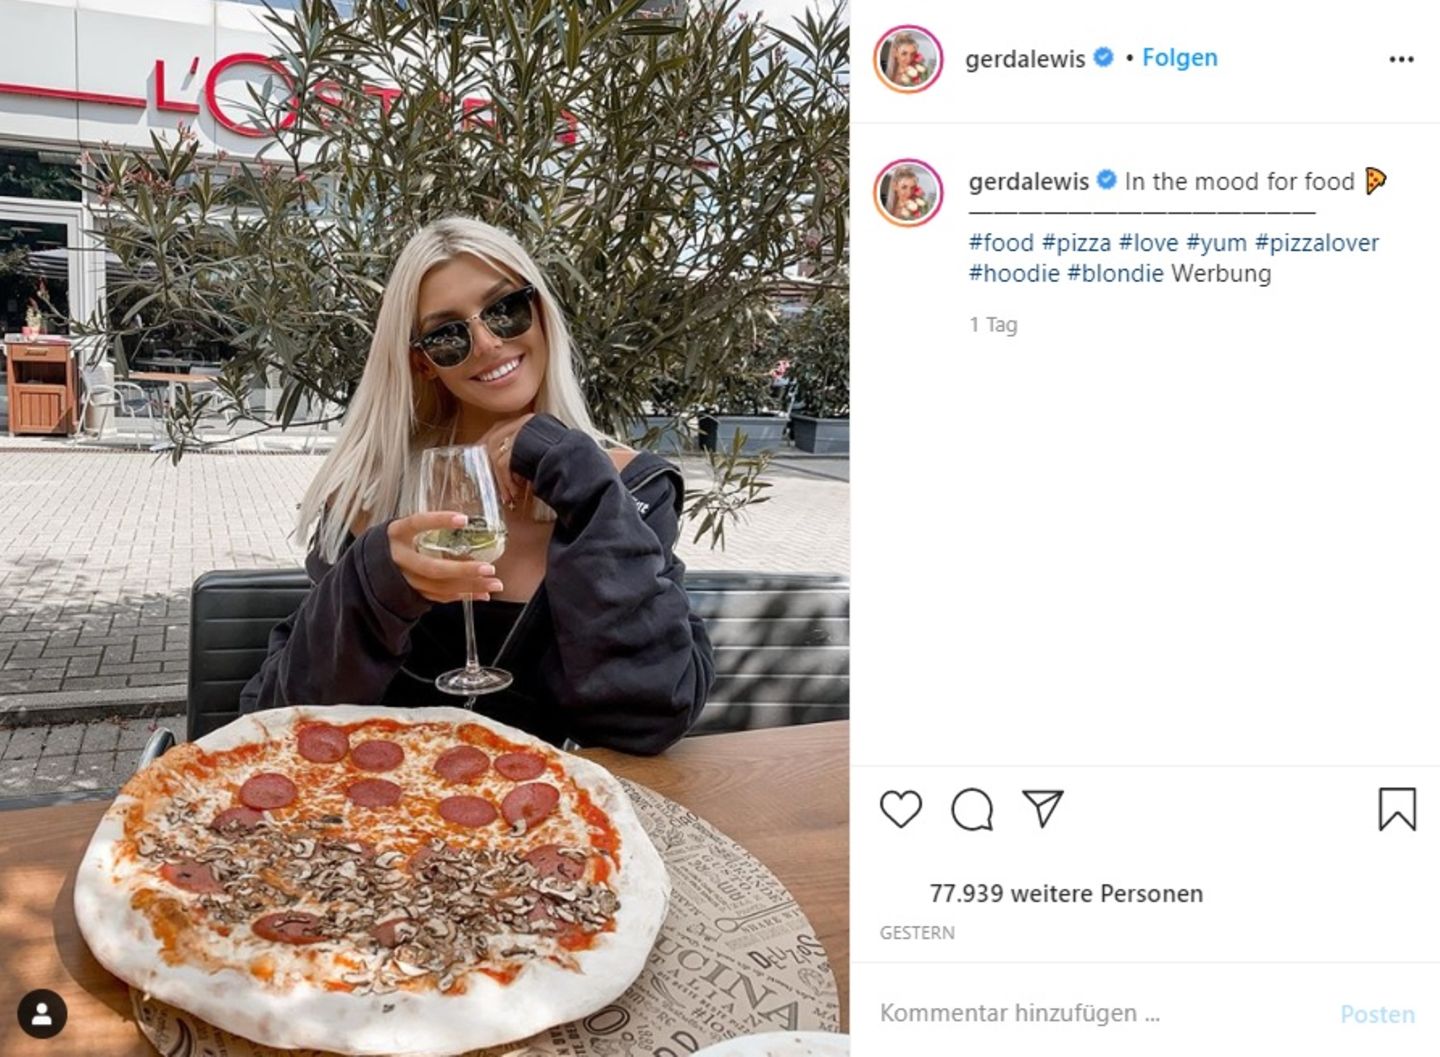 Gerda Lewis Wird Auf Instagram Fur Salami Pizza Bild Kritisiert Stern De